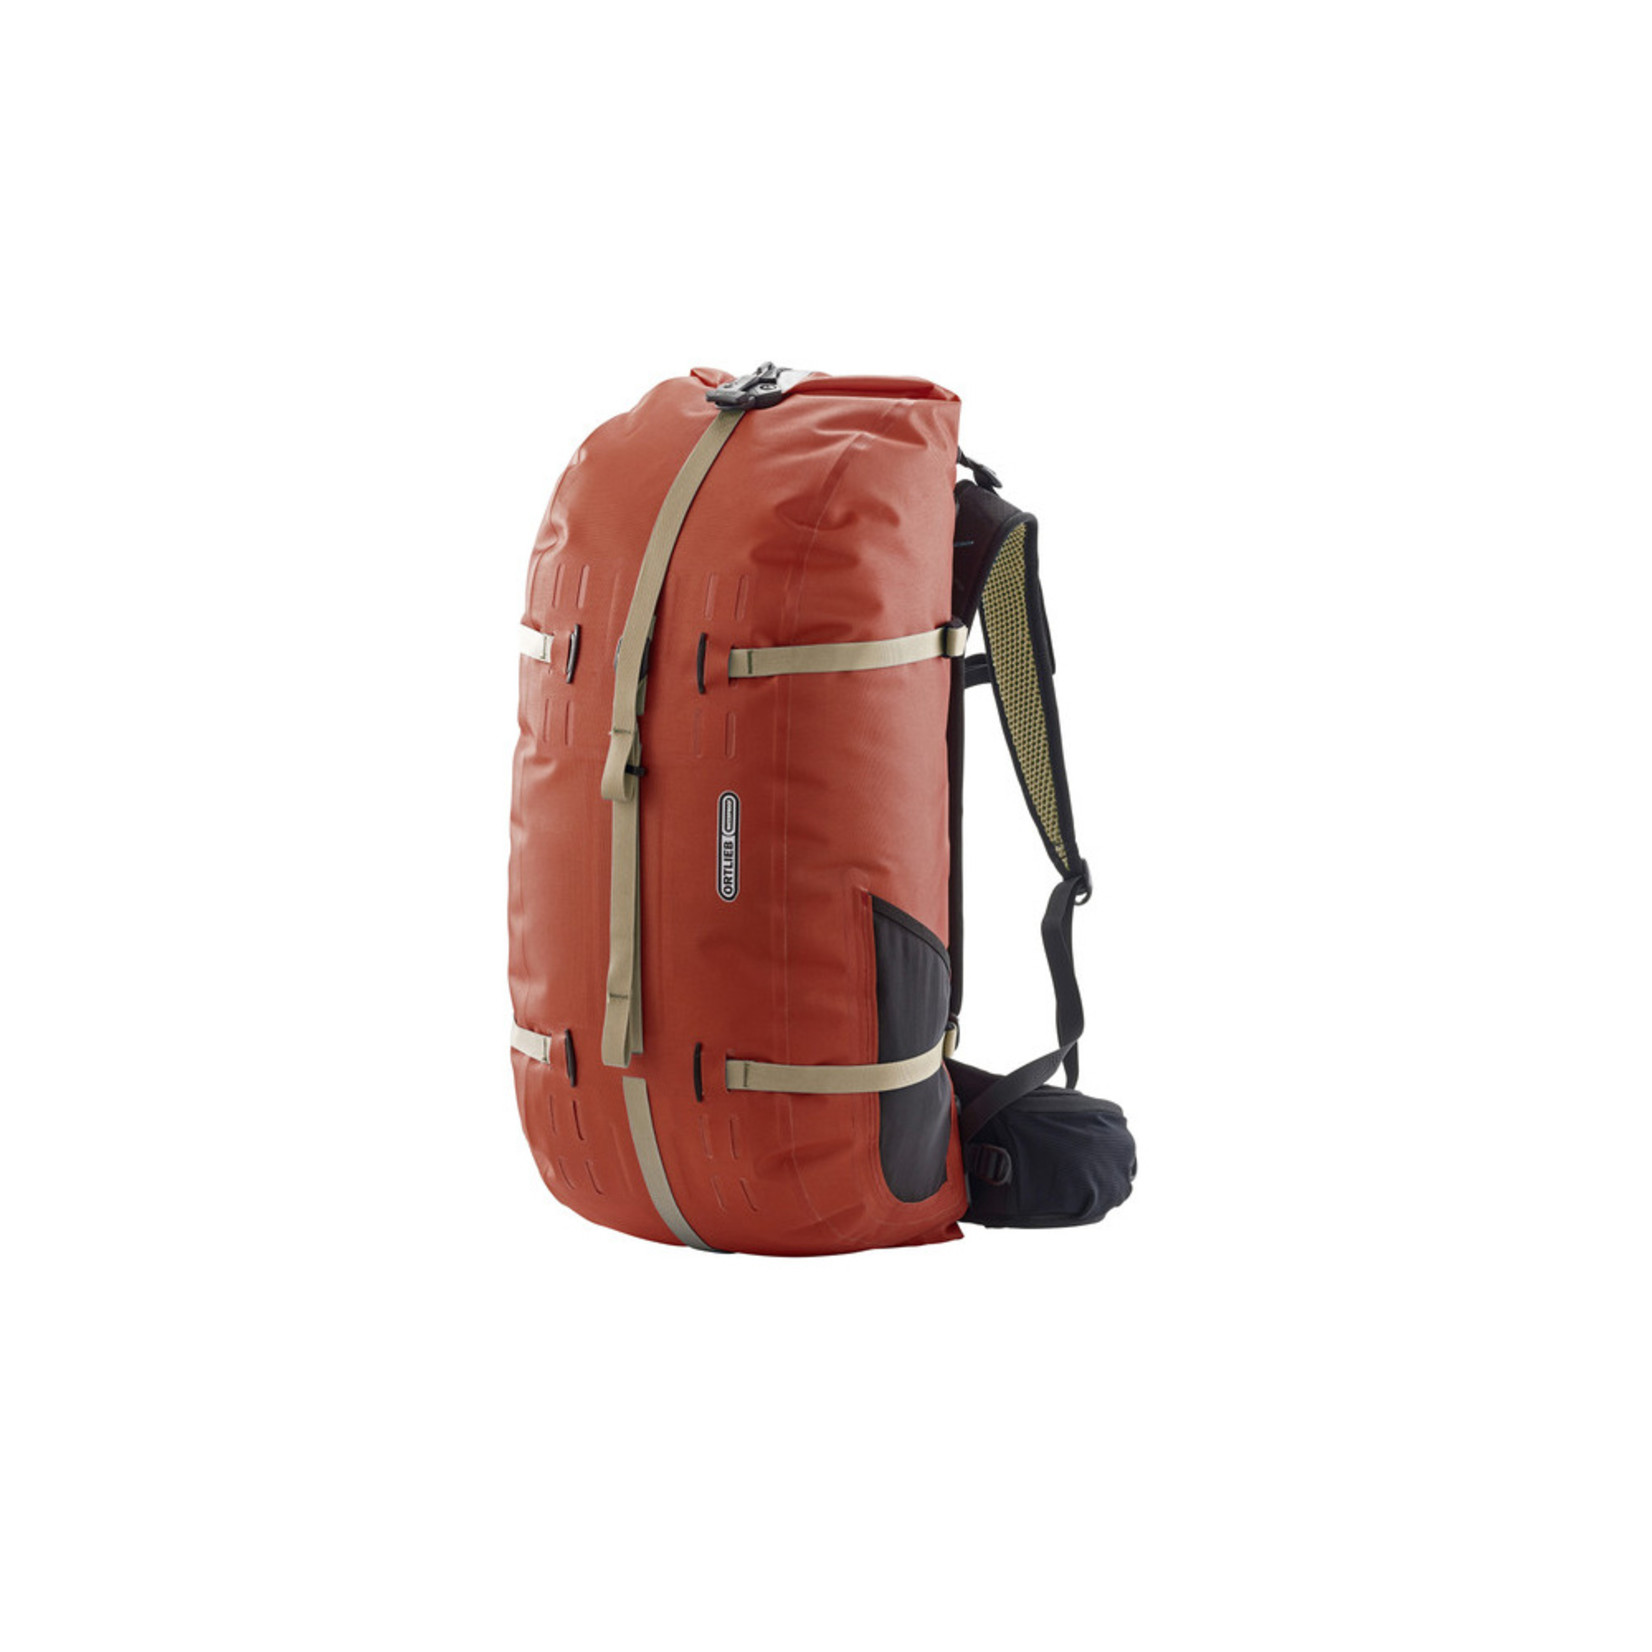 Ortlieb New Ortlieb Atrack Waterproof Backpack Travel Bag R7105 - 45L - Rooibos